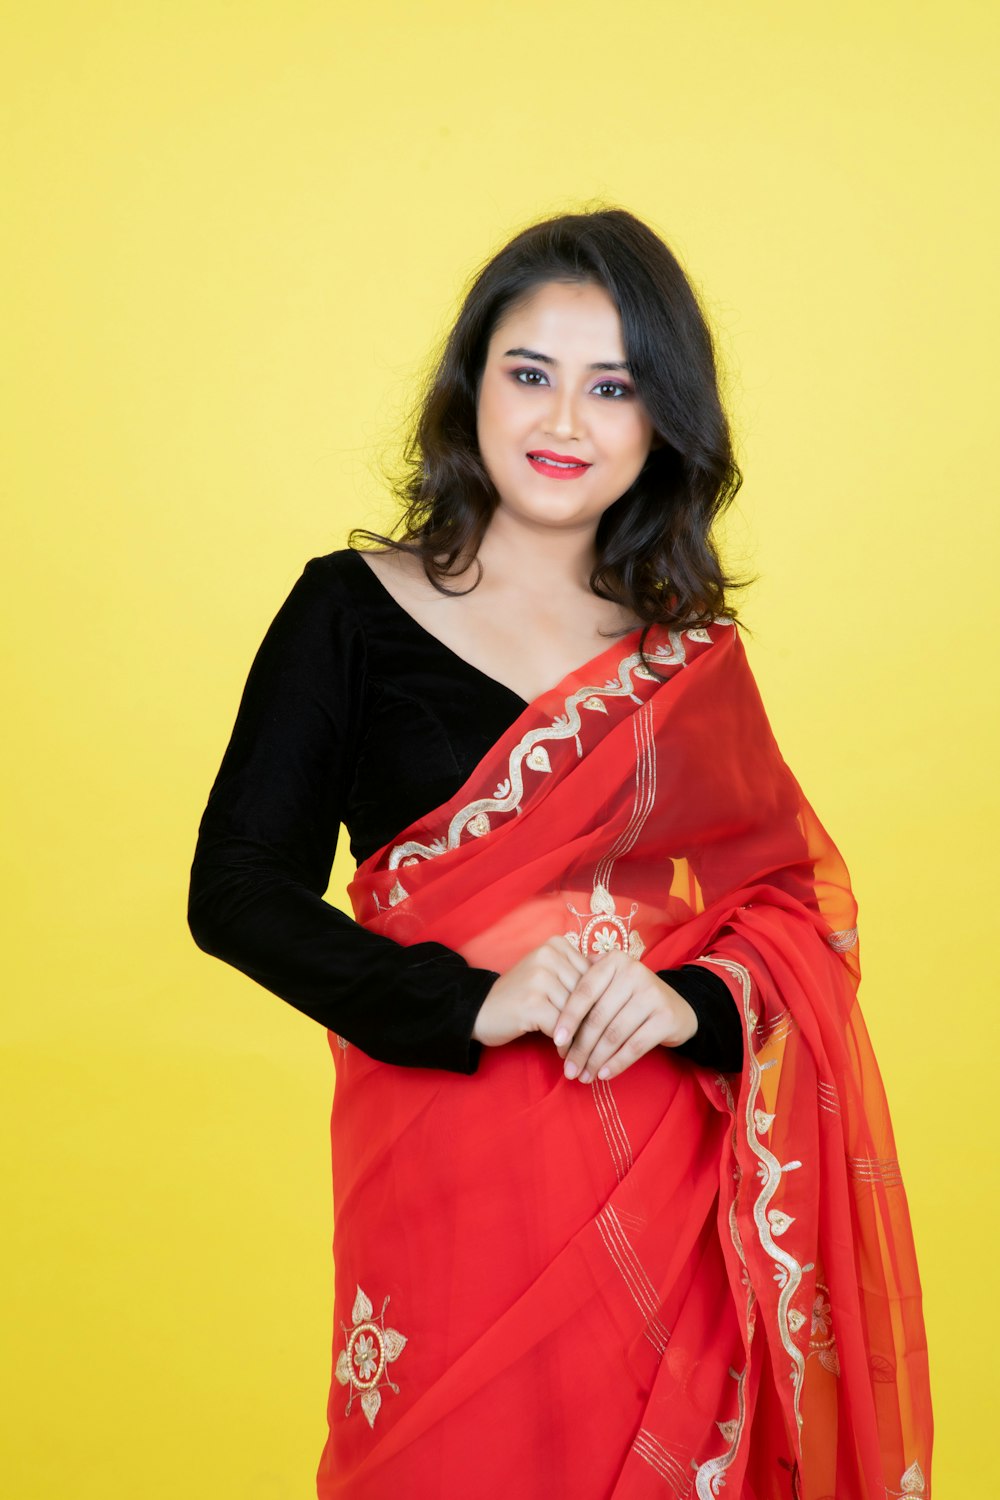 Une femme vêtue d’un sari rouge posant pour une photo